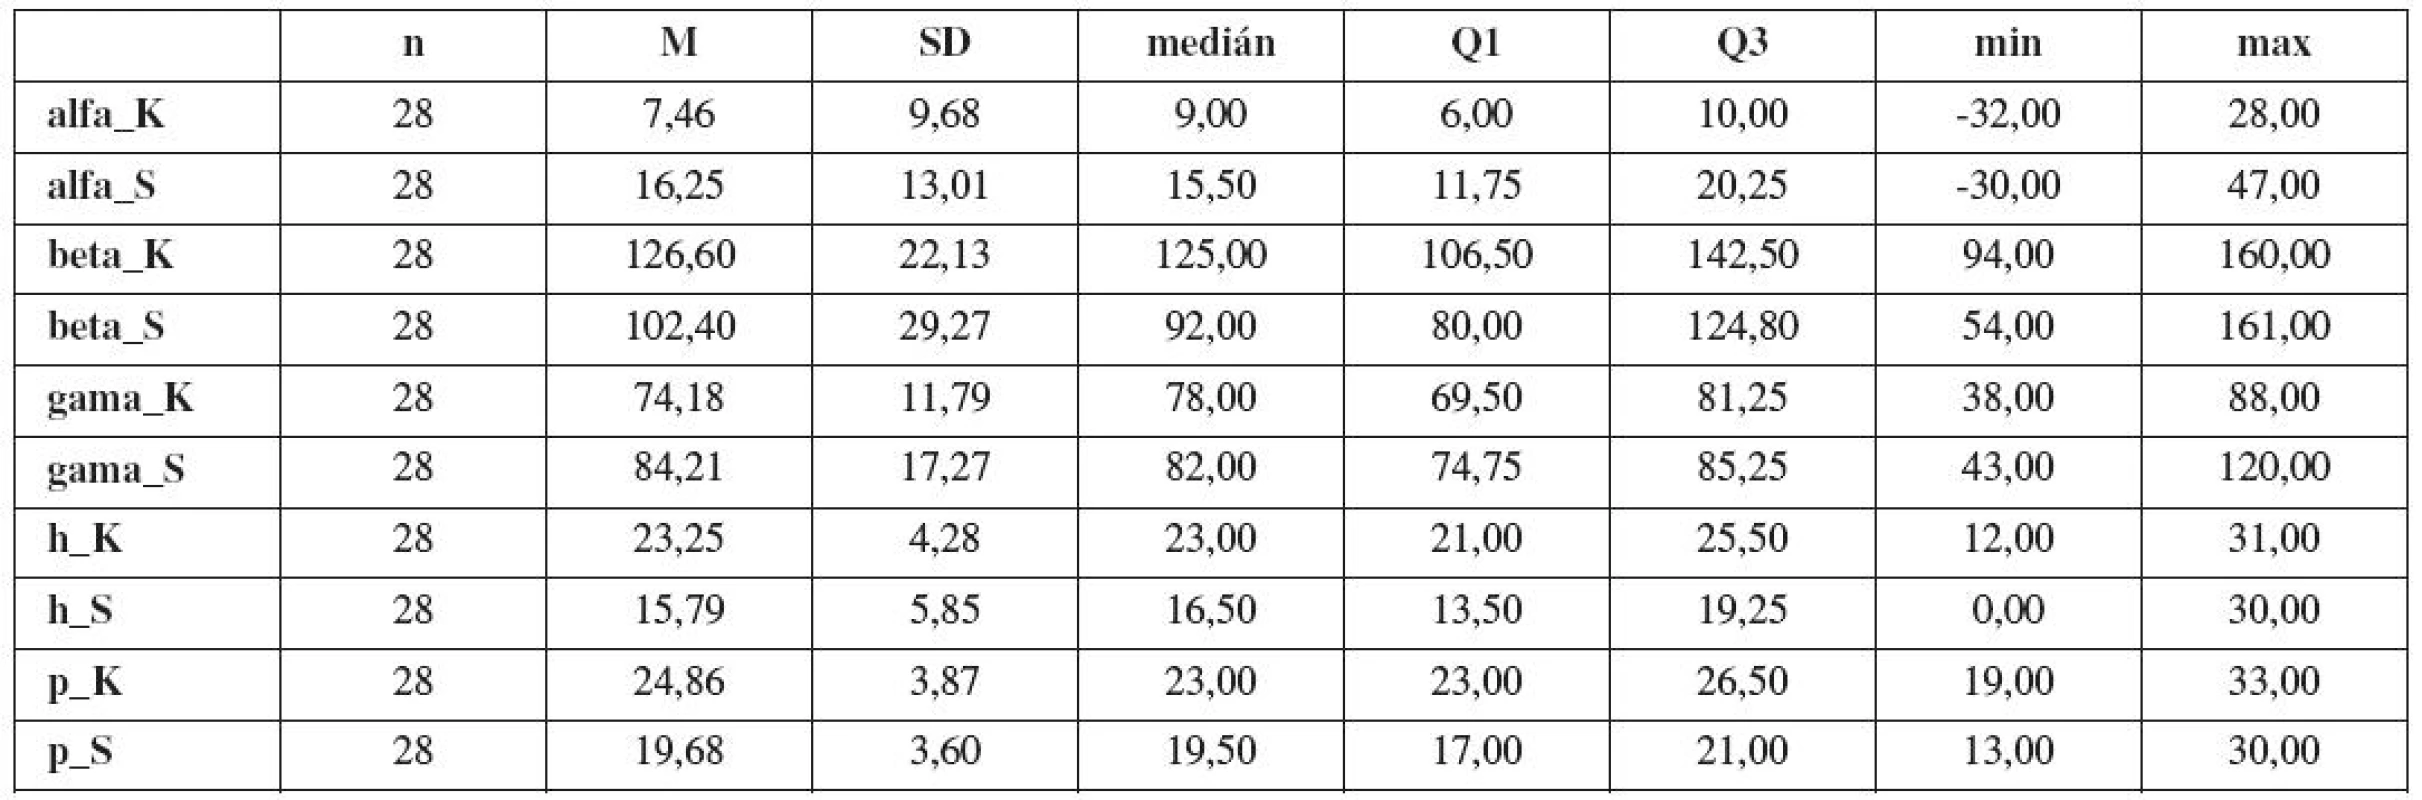 Základní statistické charakteristiky morfologických parametrů dolních močových cest v souboru „Kontroly“ (symbol: _K - parametr měřený v klidu, _S - parametr měřený při Valsalvově manévru, počet n, průměr M, směrodatná odchylka SD, medián, 1. kvartil Q1 , 3. kvartil Q3, minimum, maximum)